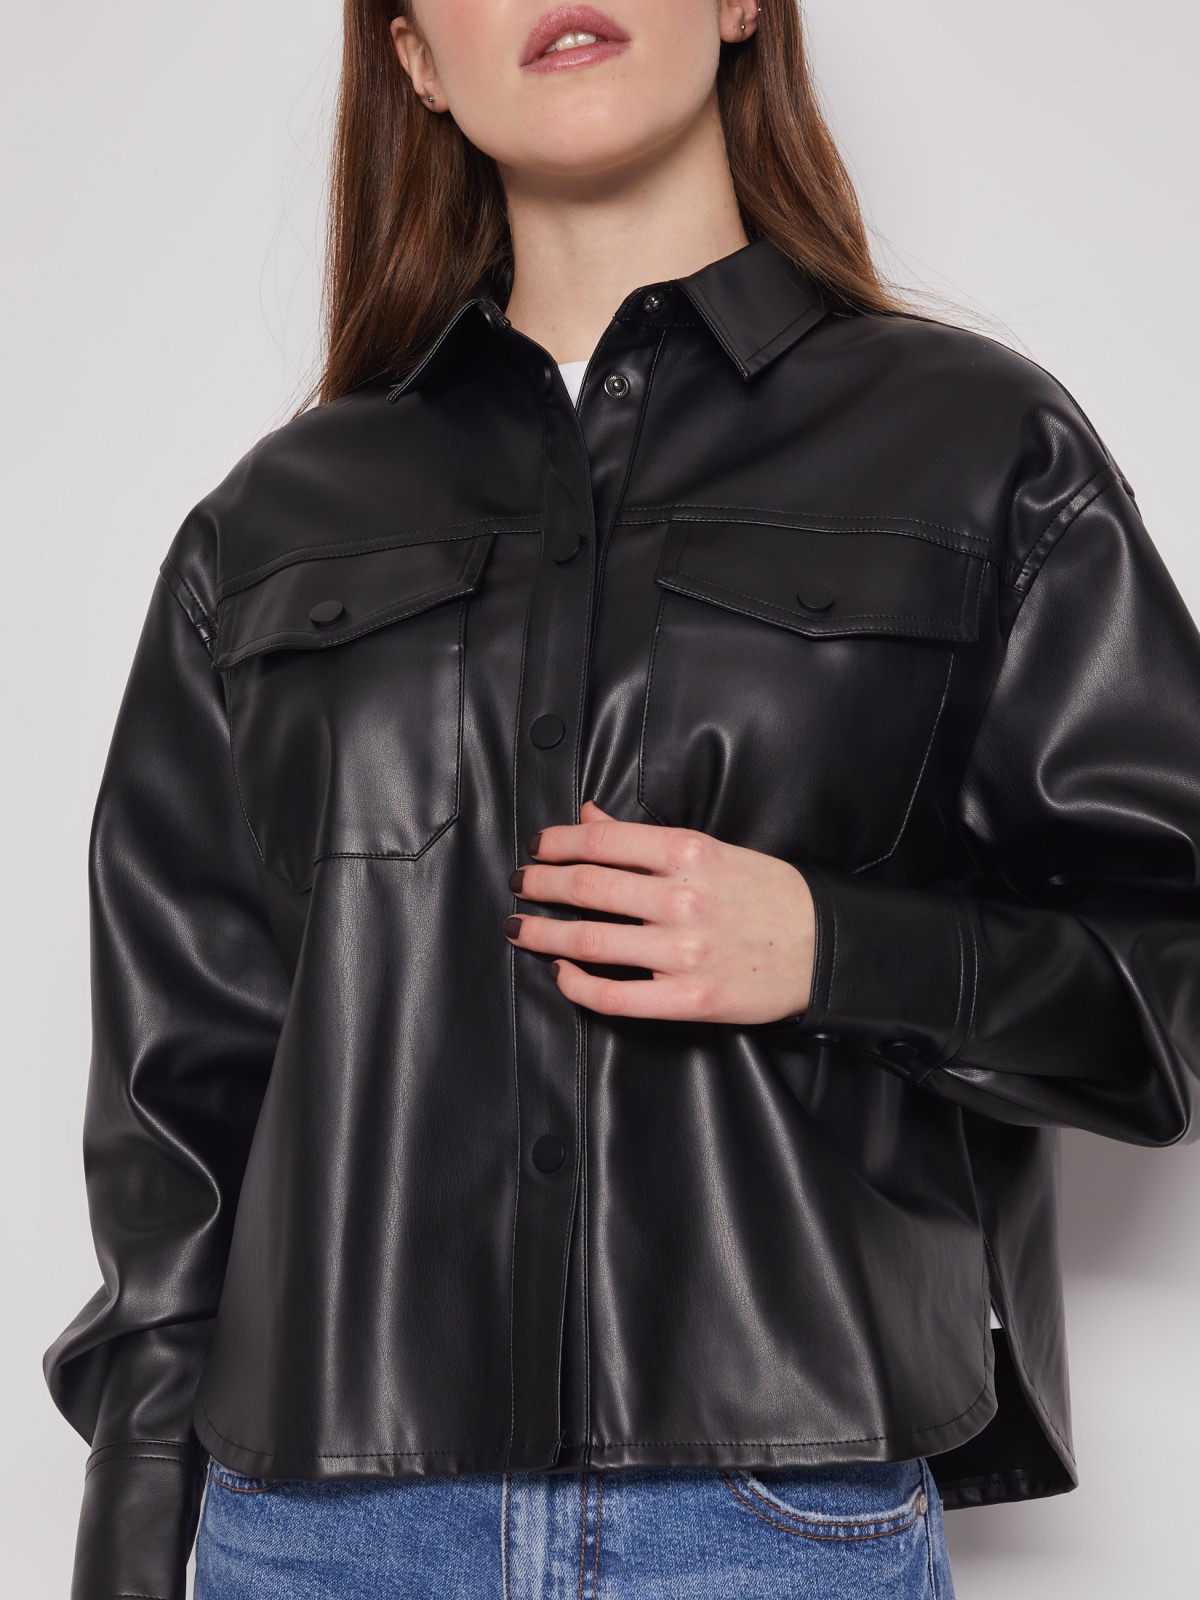 Укороченная куртка-рубашка из экокожи zolla 222115459101, цвет черный, размер XS - фото 5